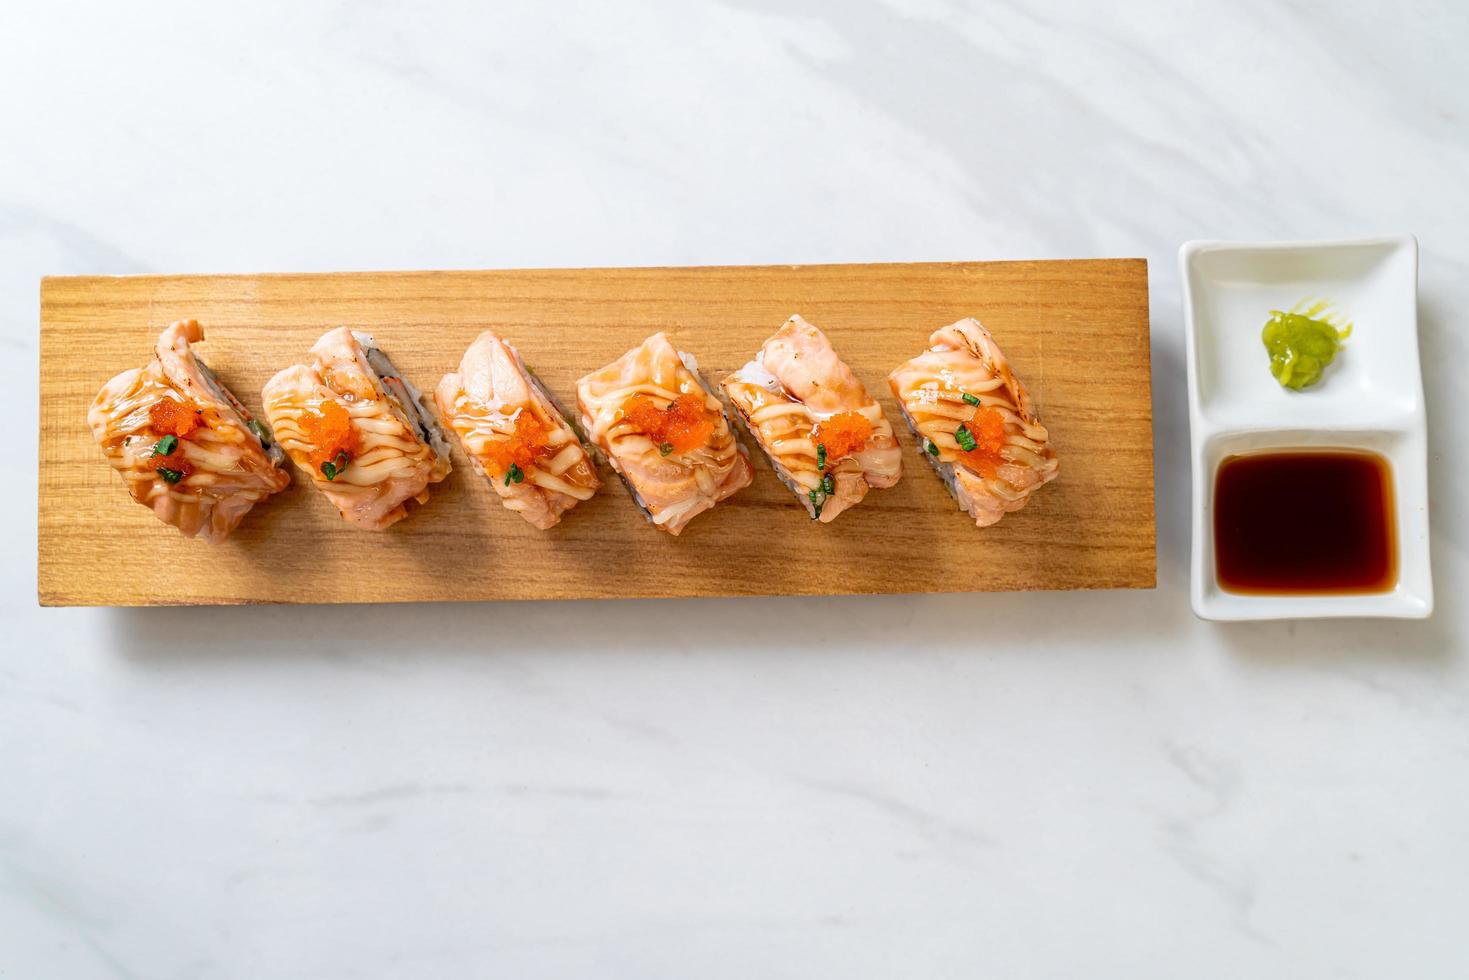 rouleau de sushi au saumon grillé avec sauce - style de cuisine japonaise photo